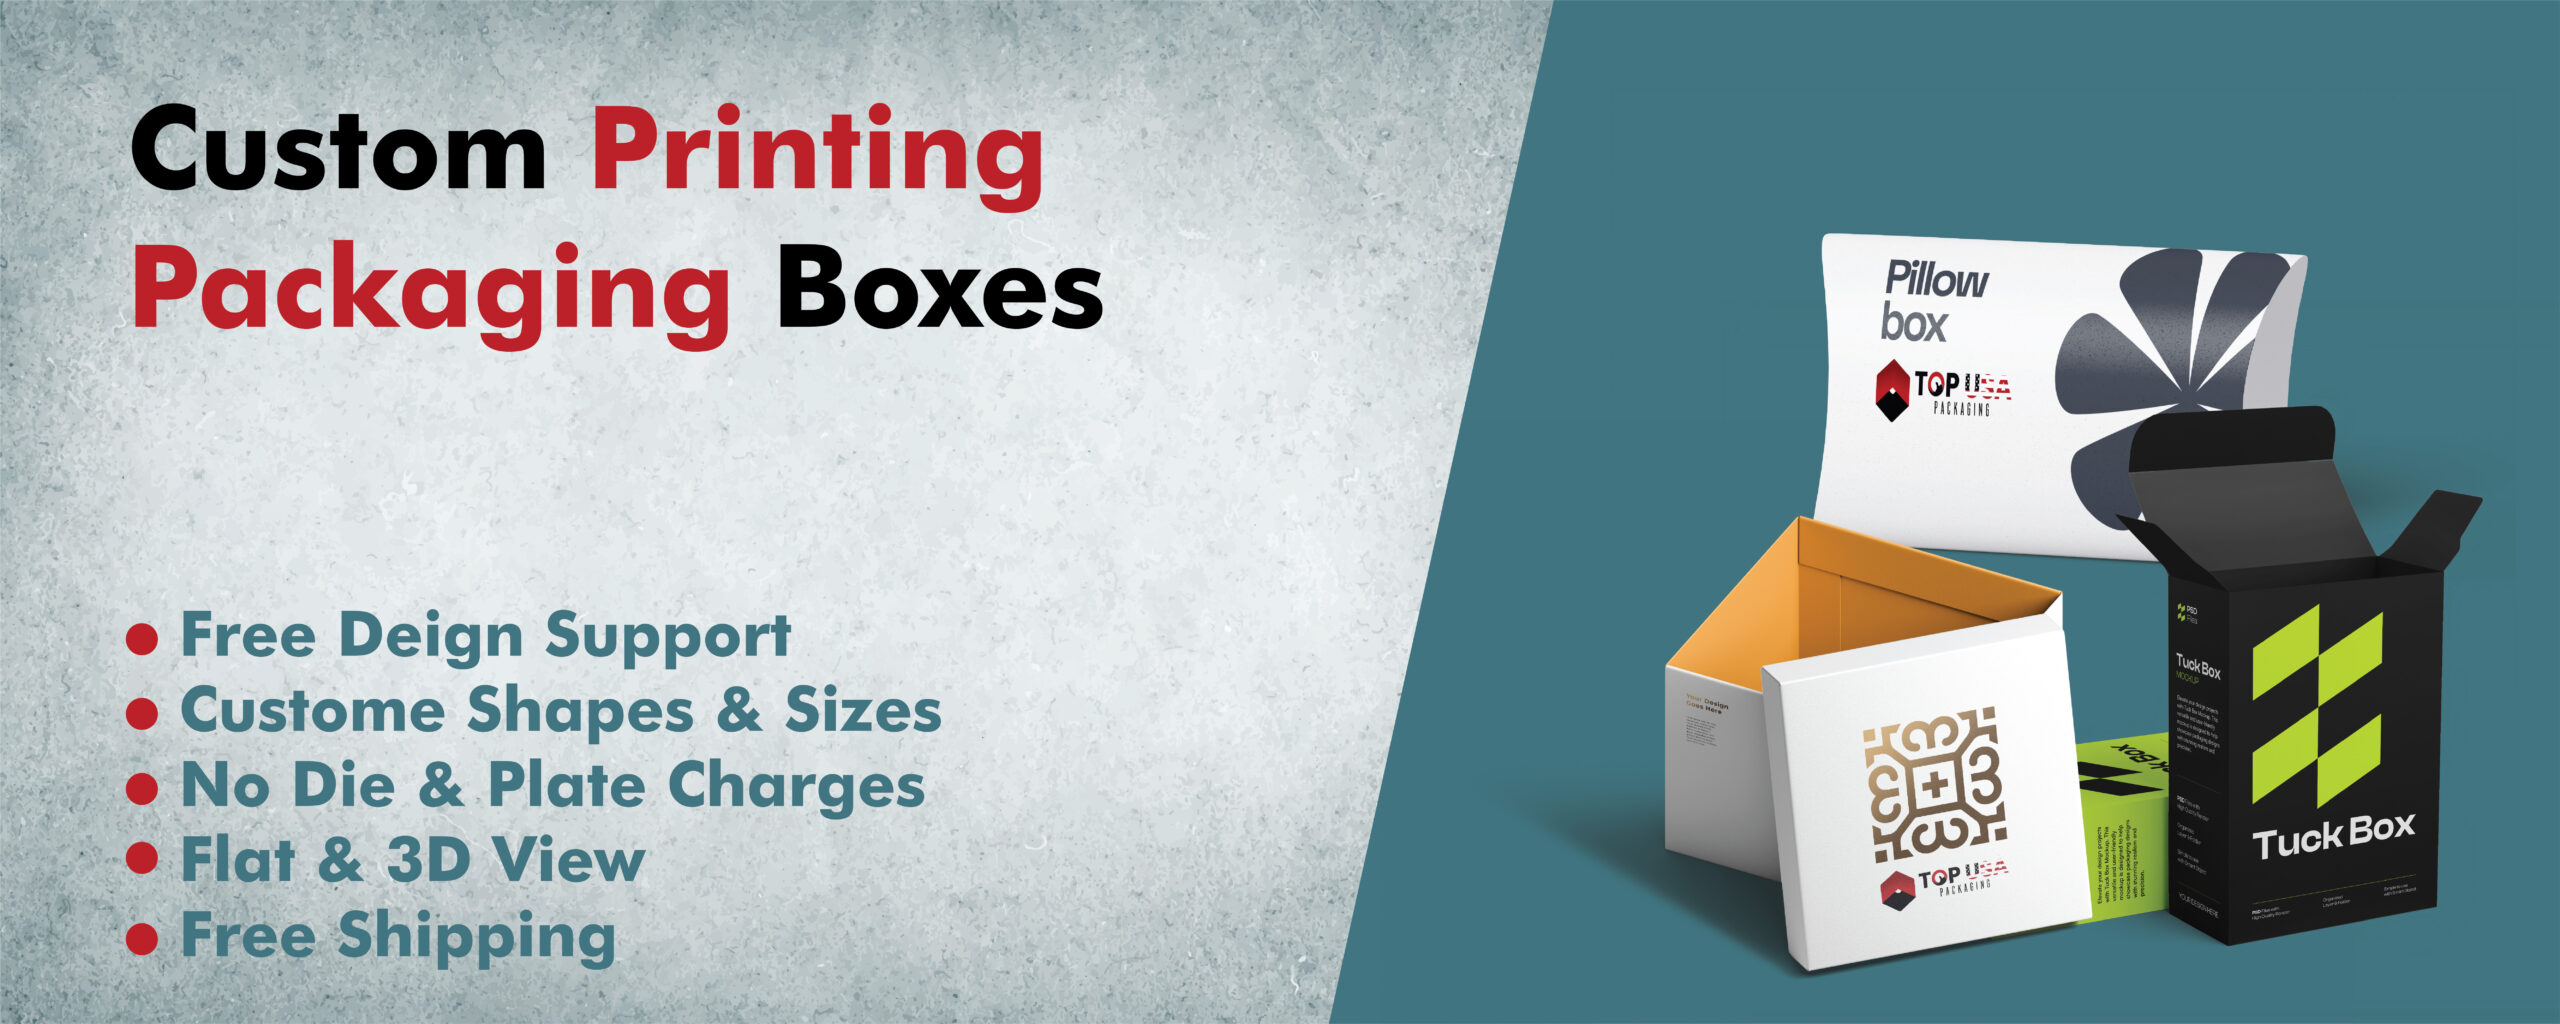 Custom Printing Packaging Boxes